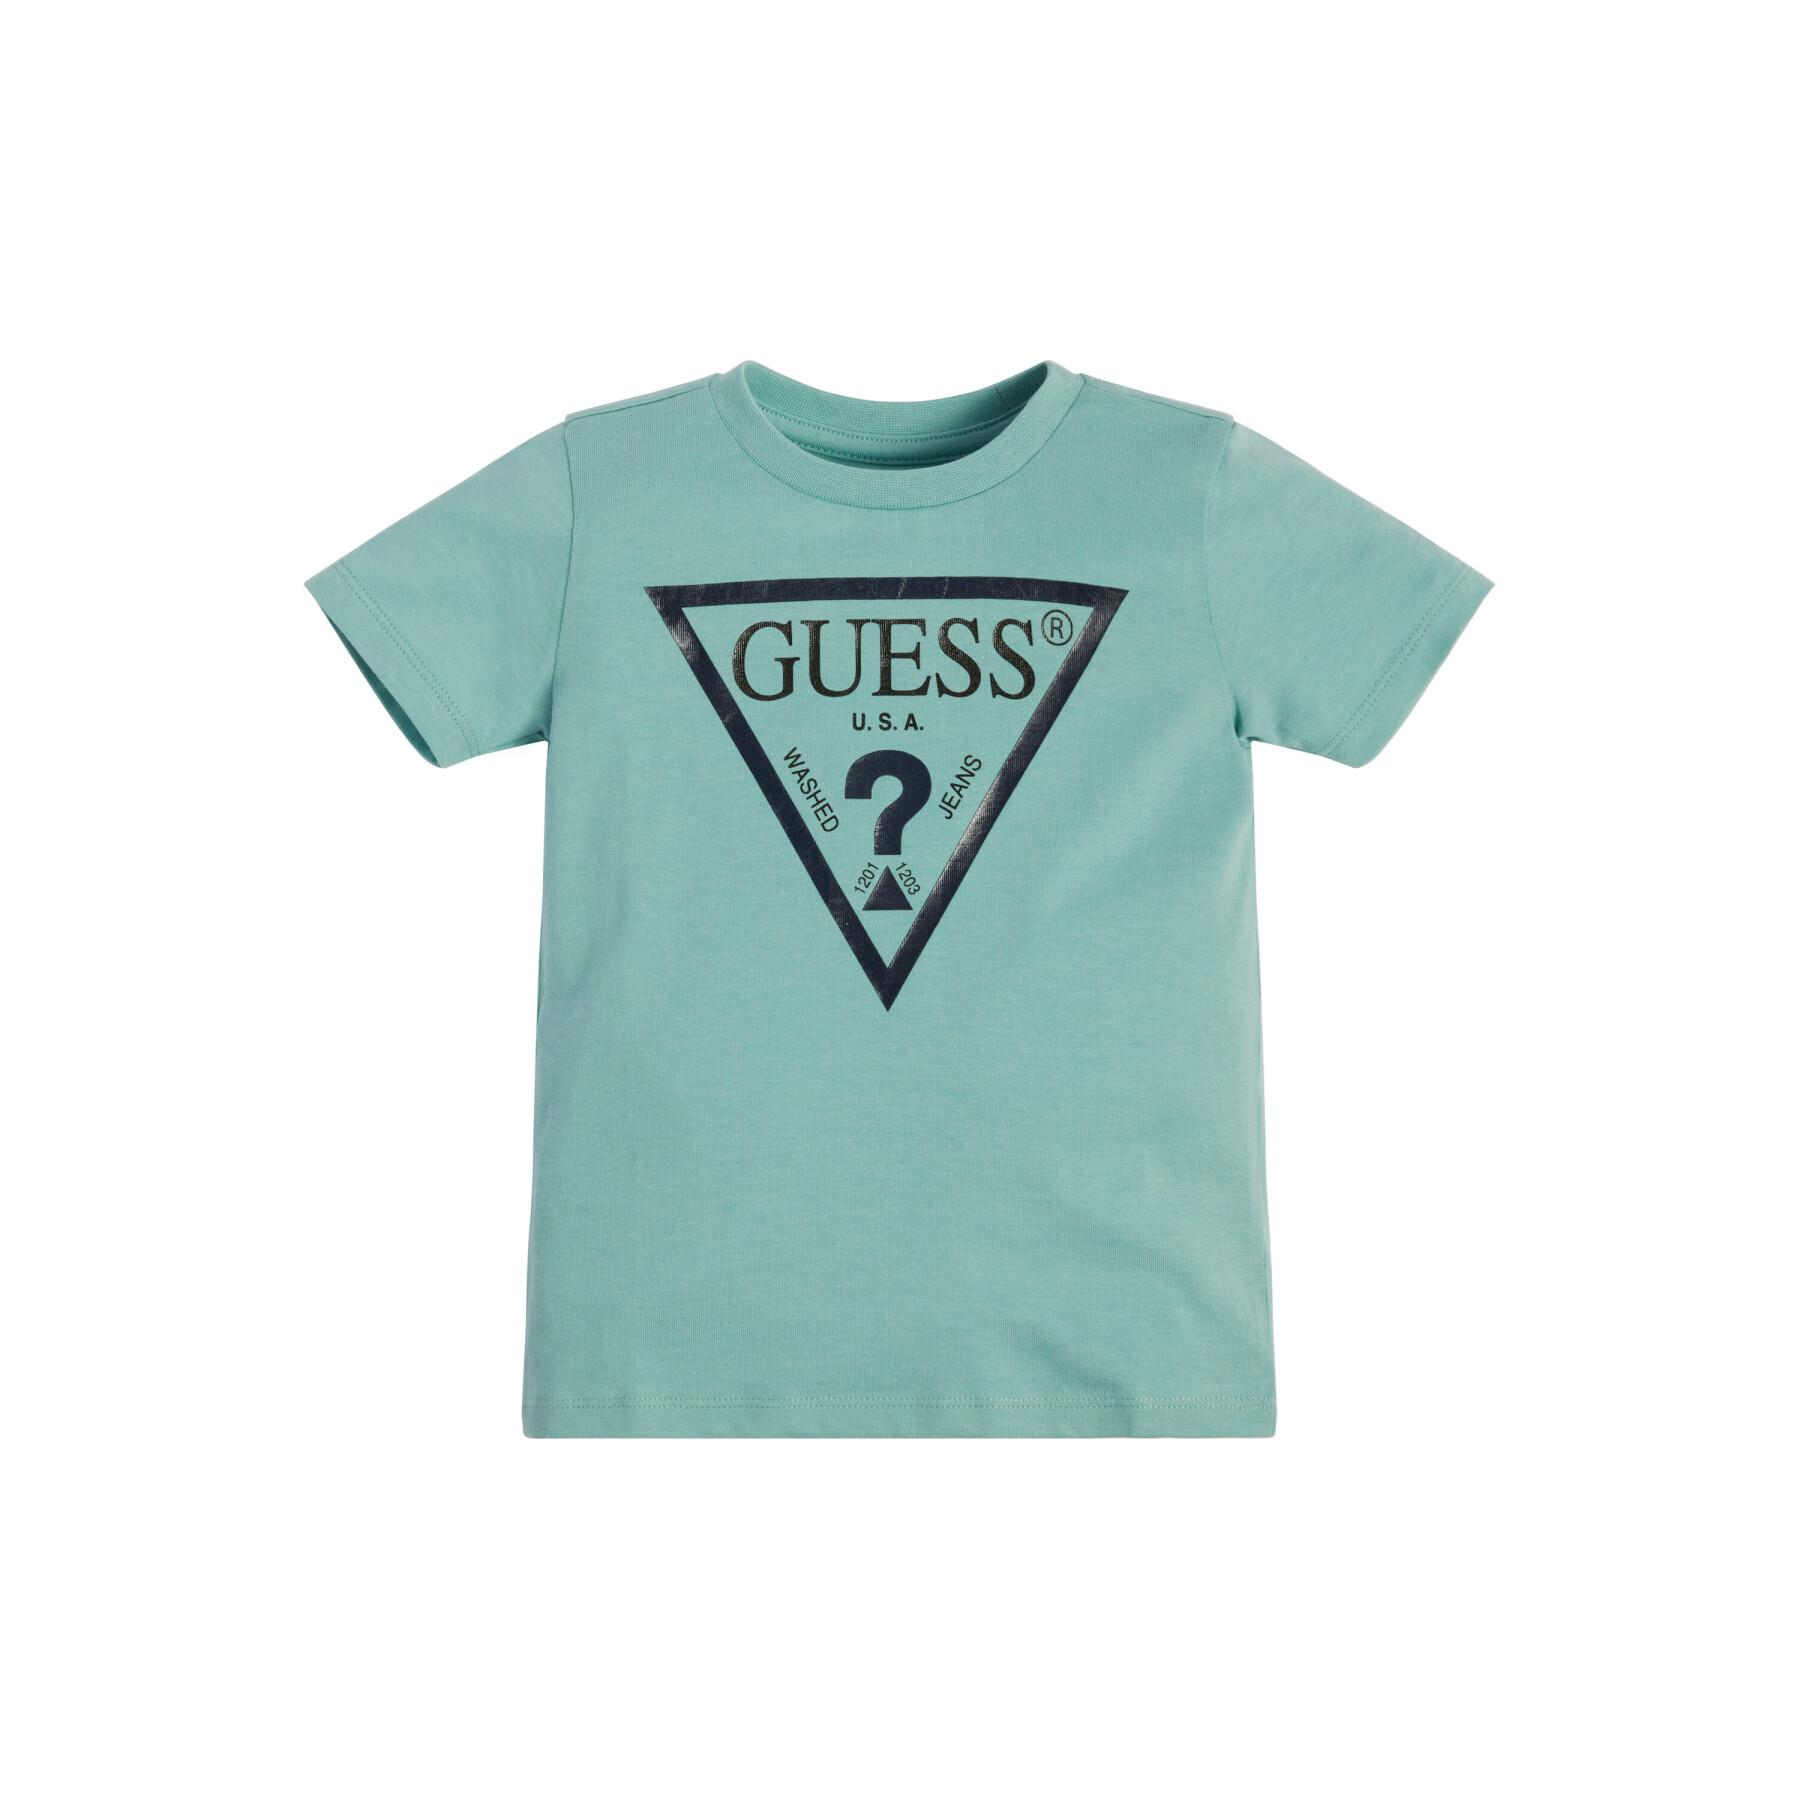 Koszulka dla dzieci Guess Core